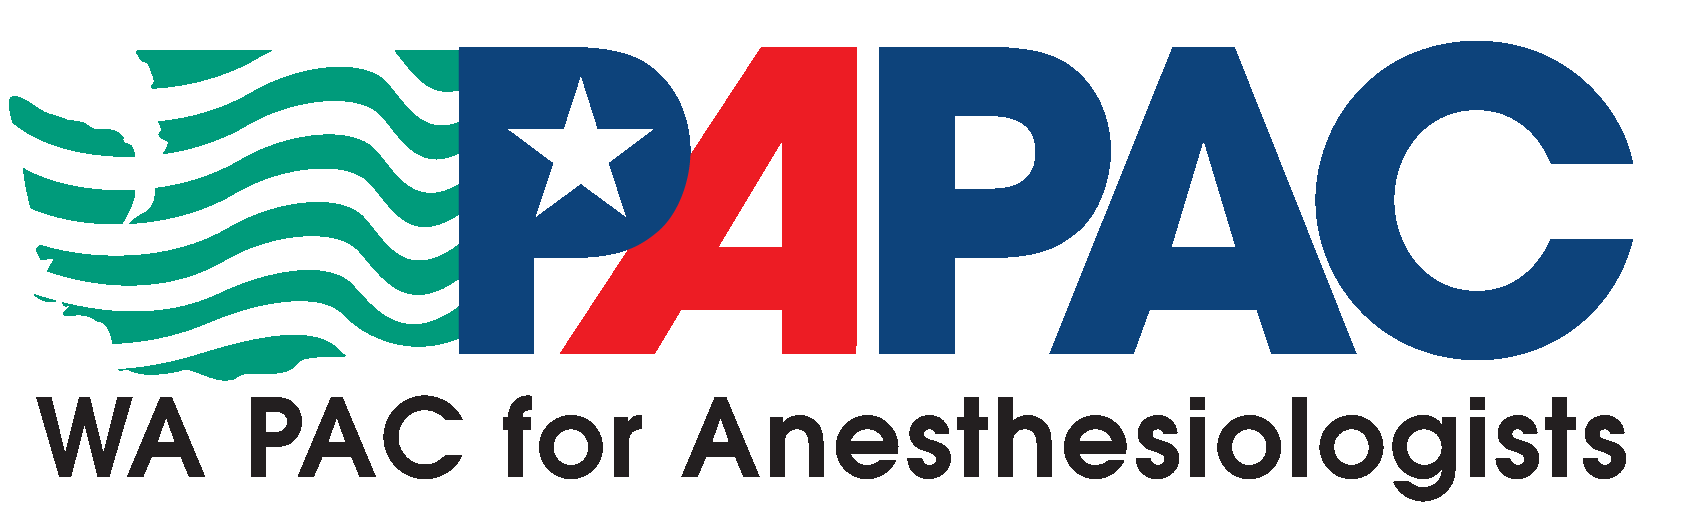 PAPAC_logo